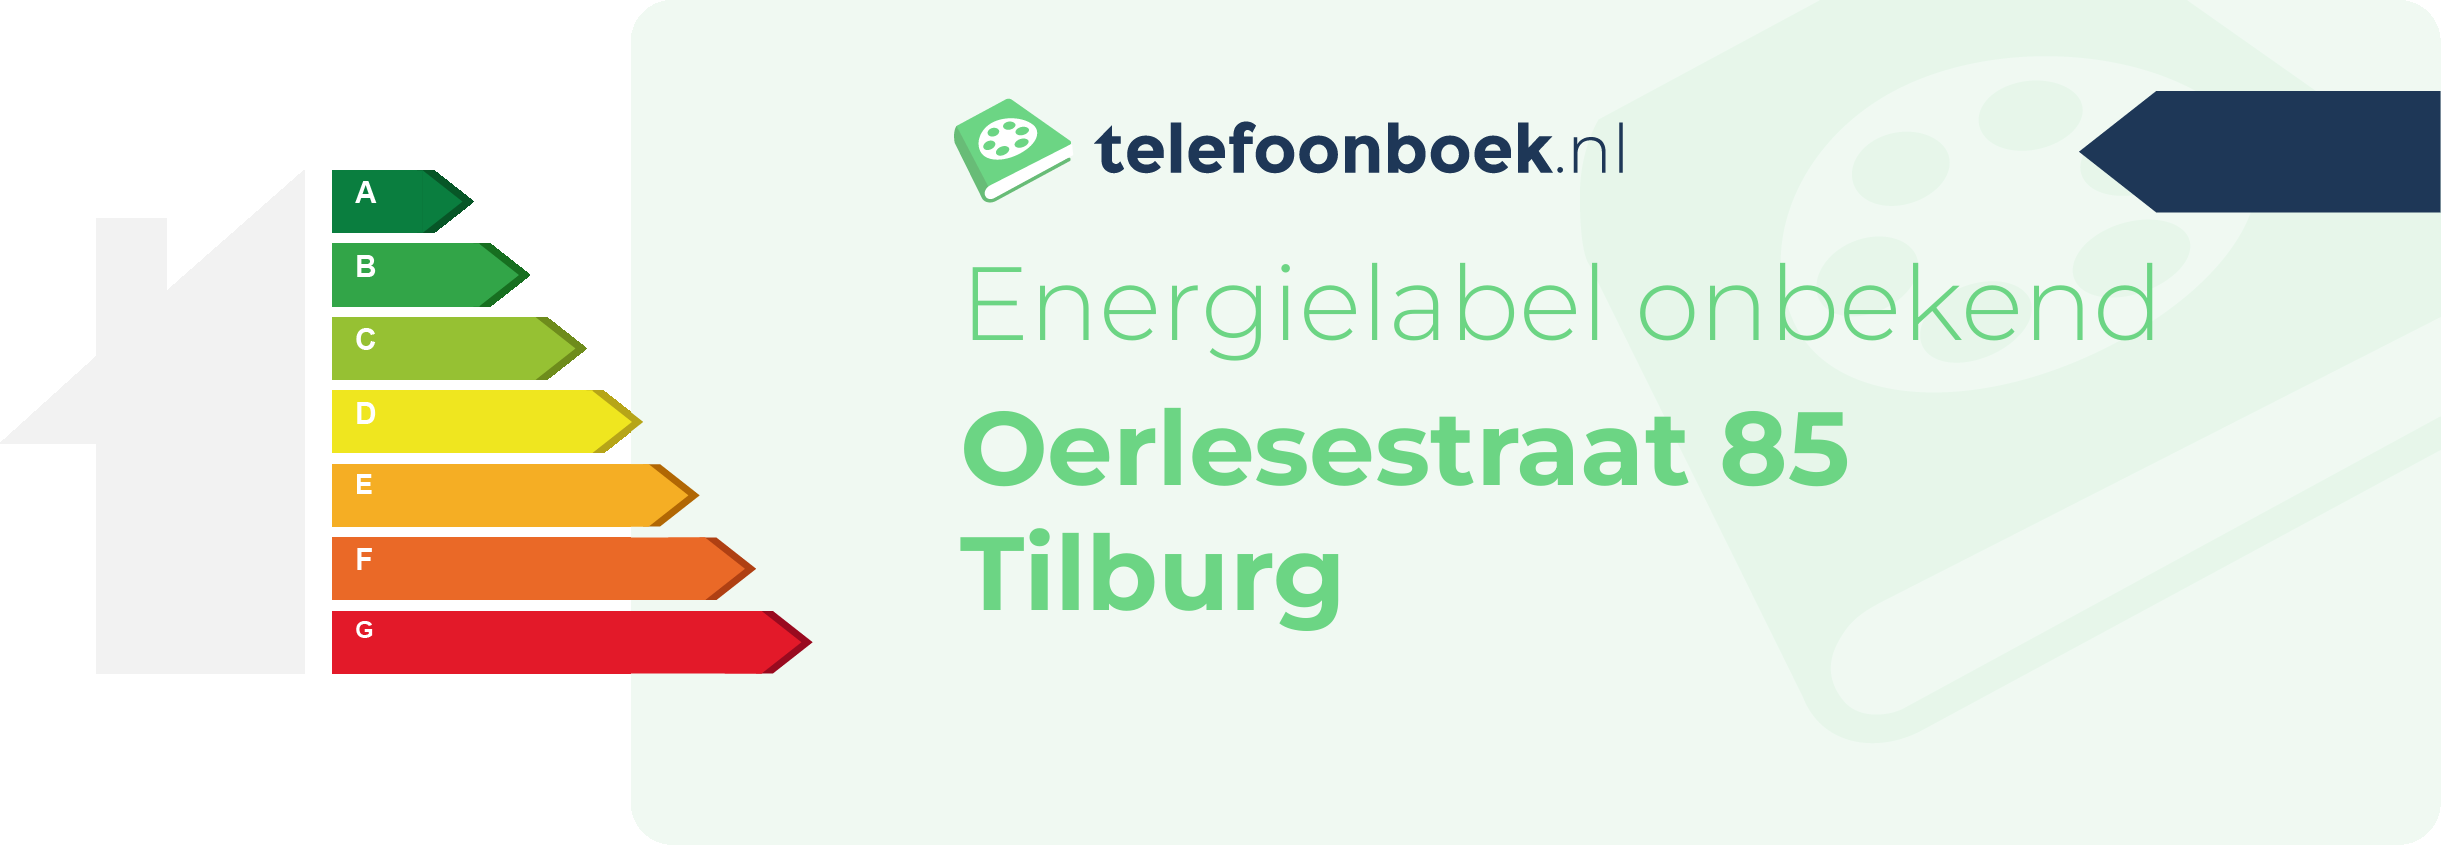 Energielabel Oerlesestraat 85 Tilburg